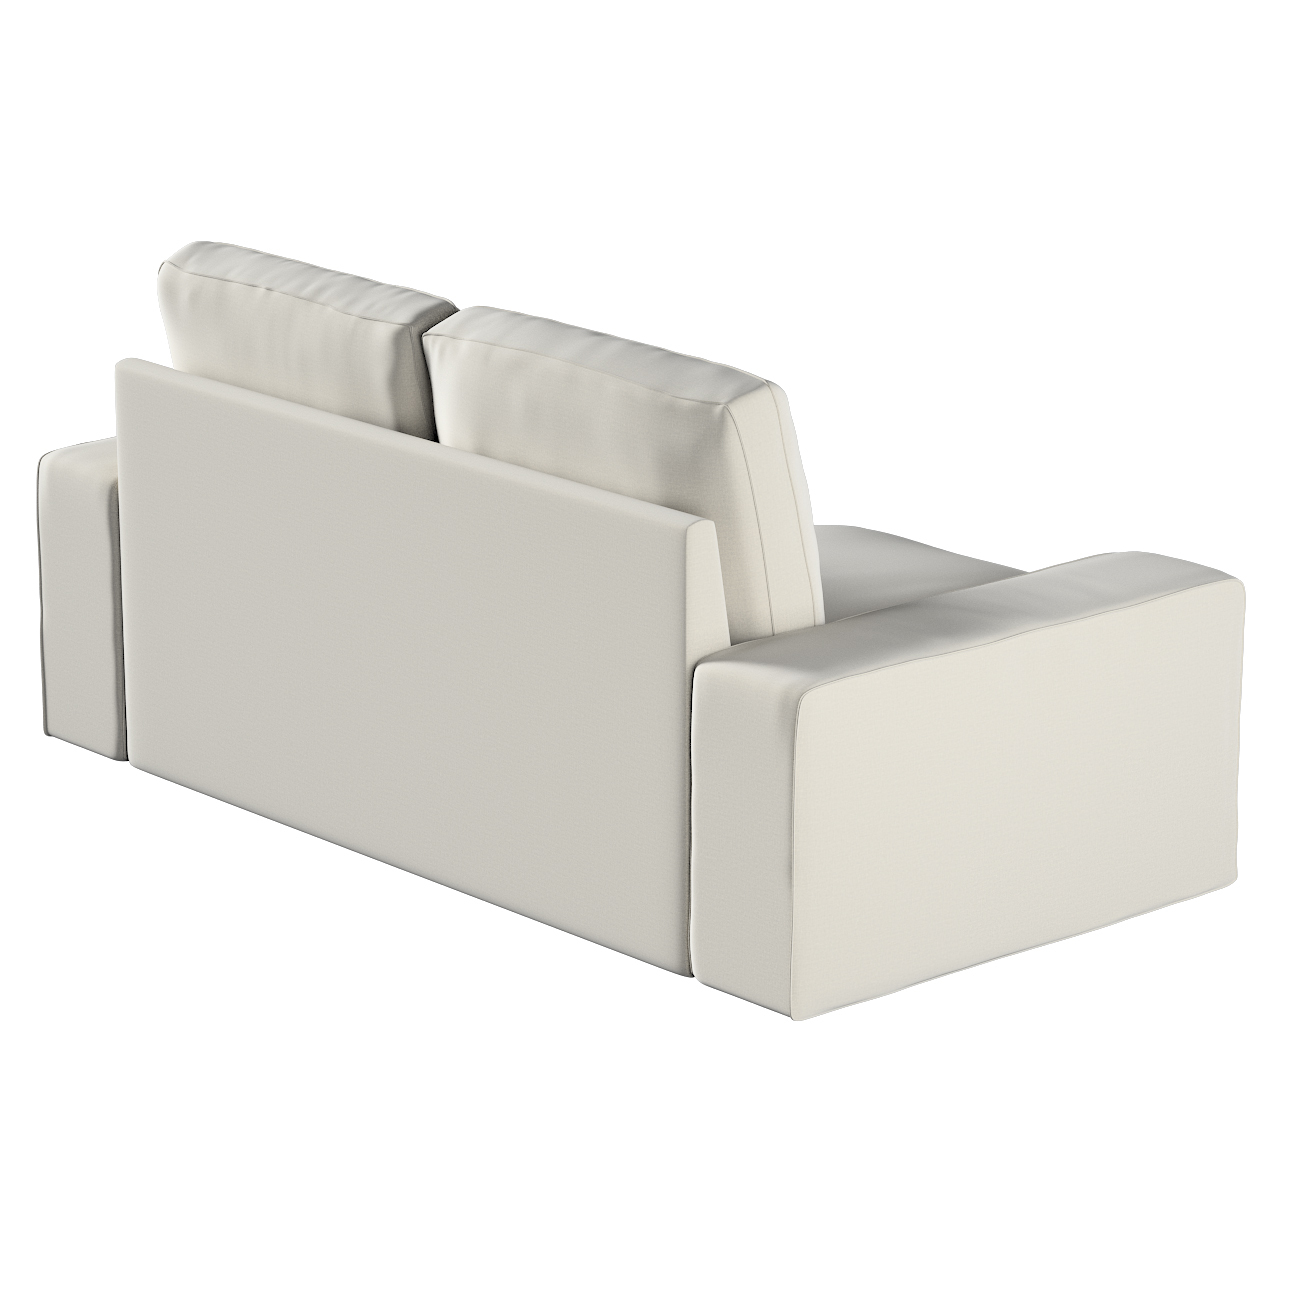 Bezug für Kivik 2-Sitzer Sofa, grau, Bezug für Sofa Kivik 2-Sitzer, Ingrid günstig online kaufen